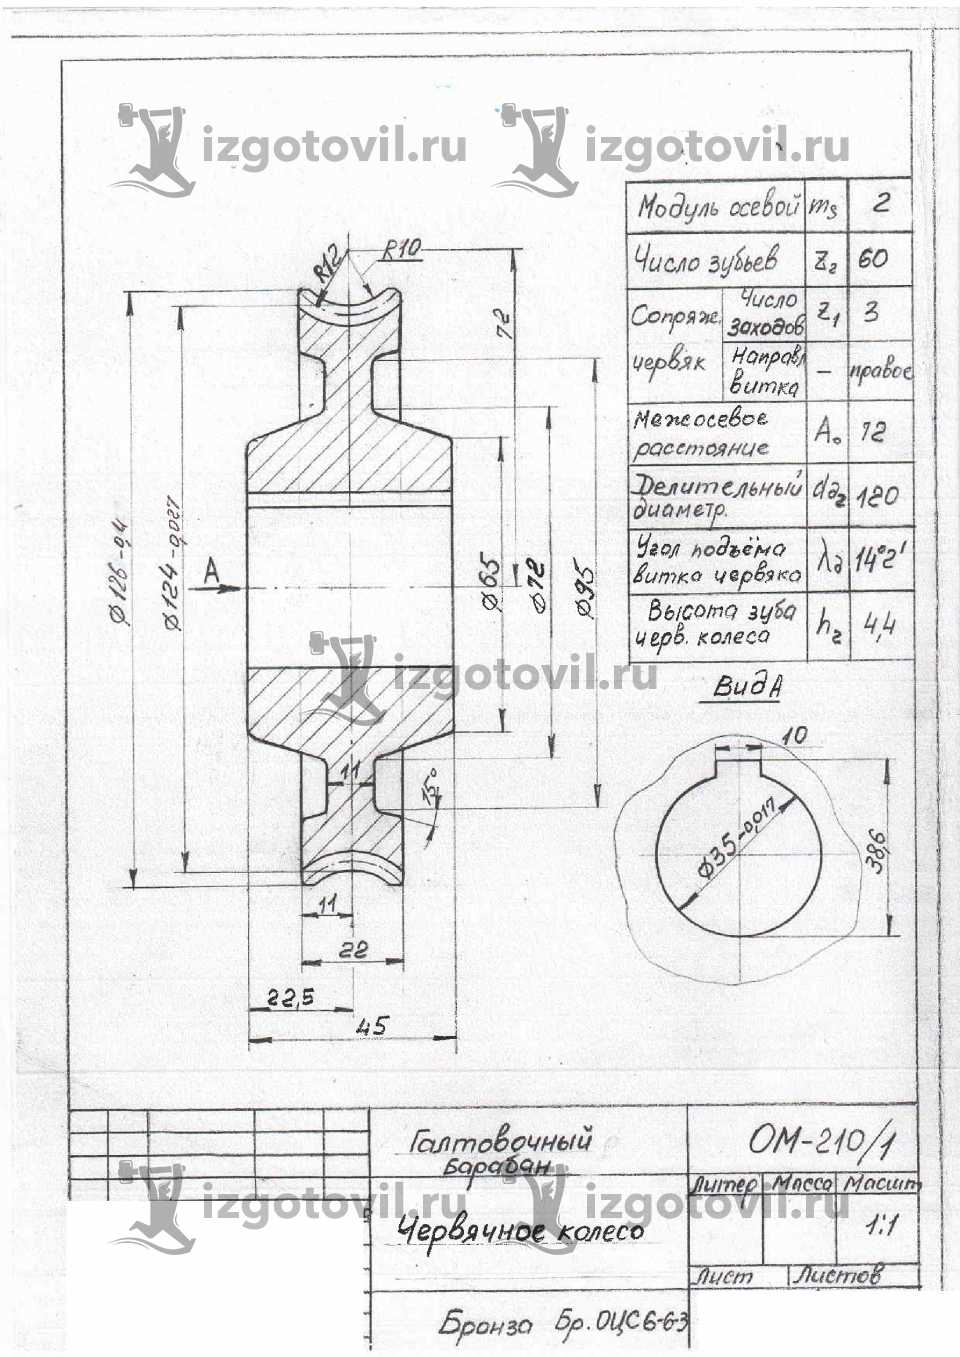 Токарно-фрезерная обработка - изготовить корпус нагревателя